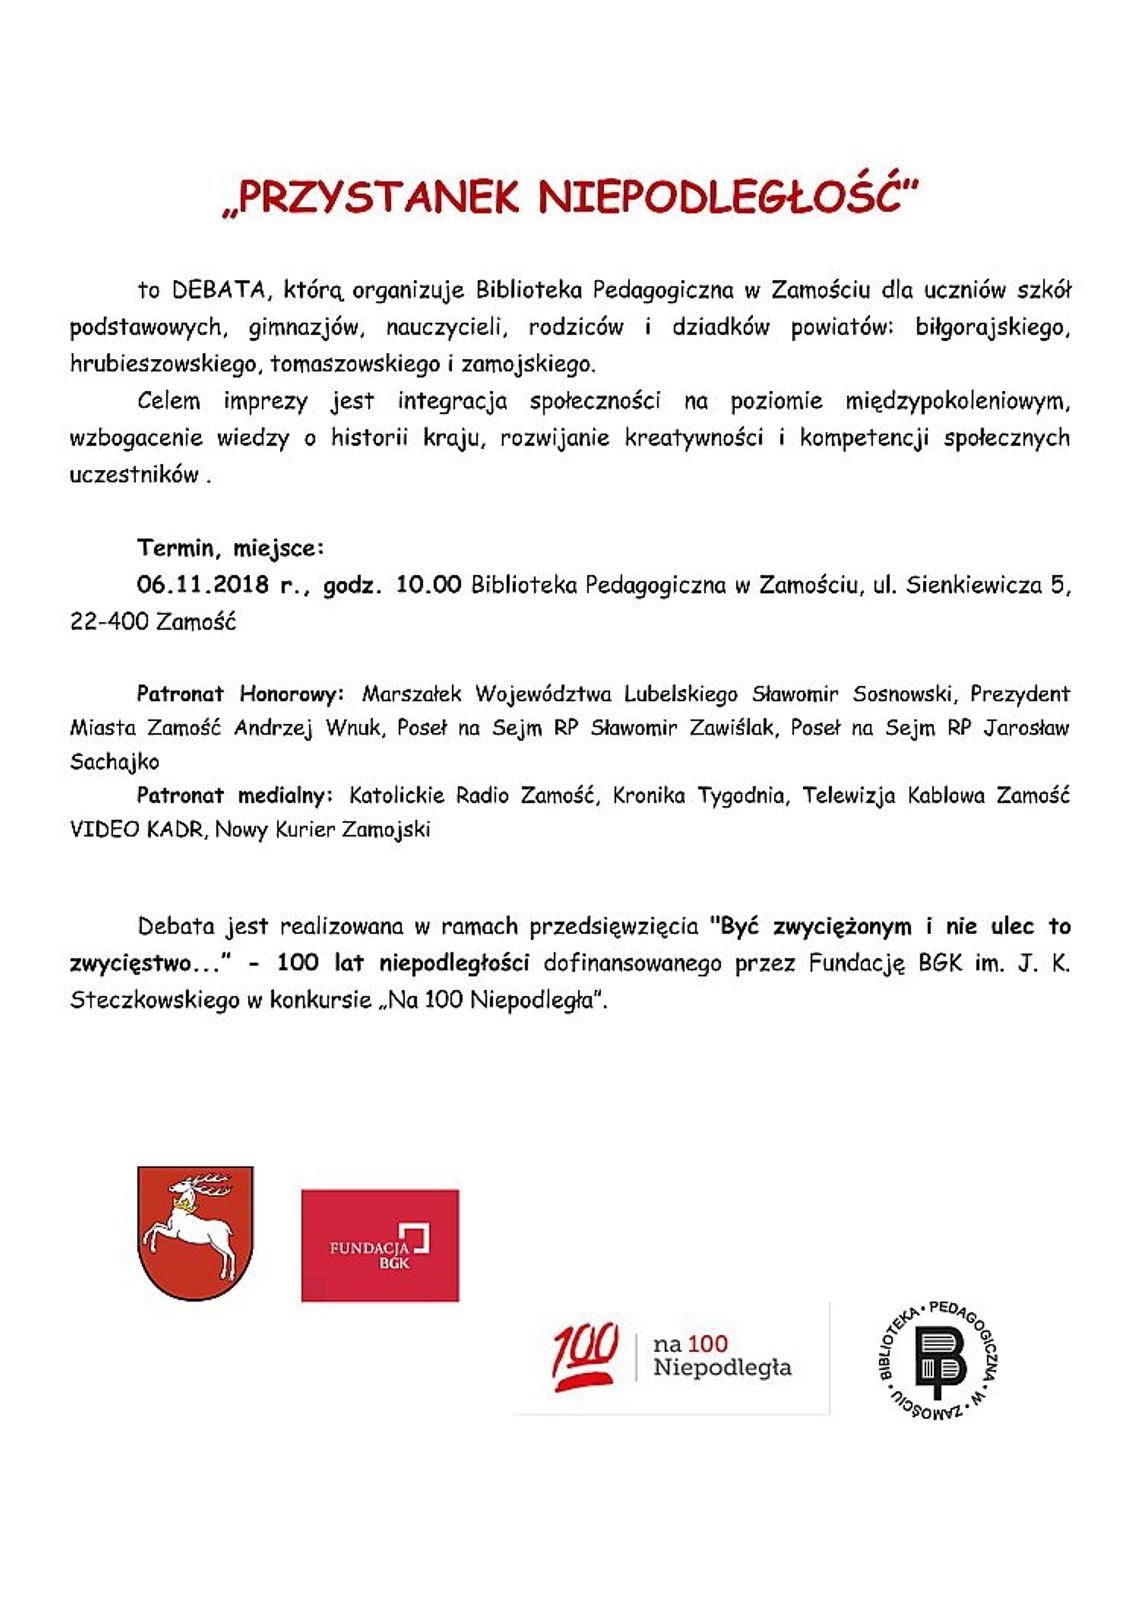 Debata "Przystanek niepodległość" w Bibliotece Pedagogicznej w Zamościu 6.11.2018